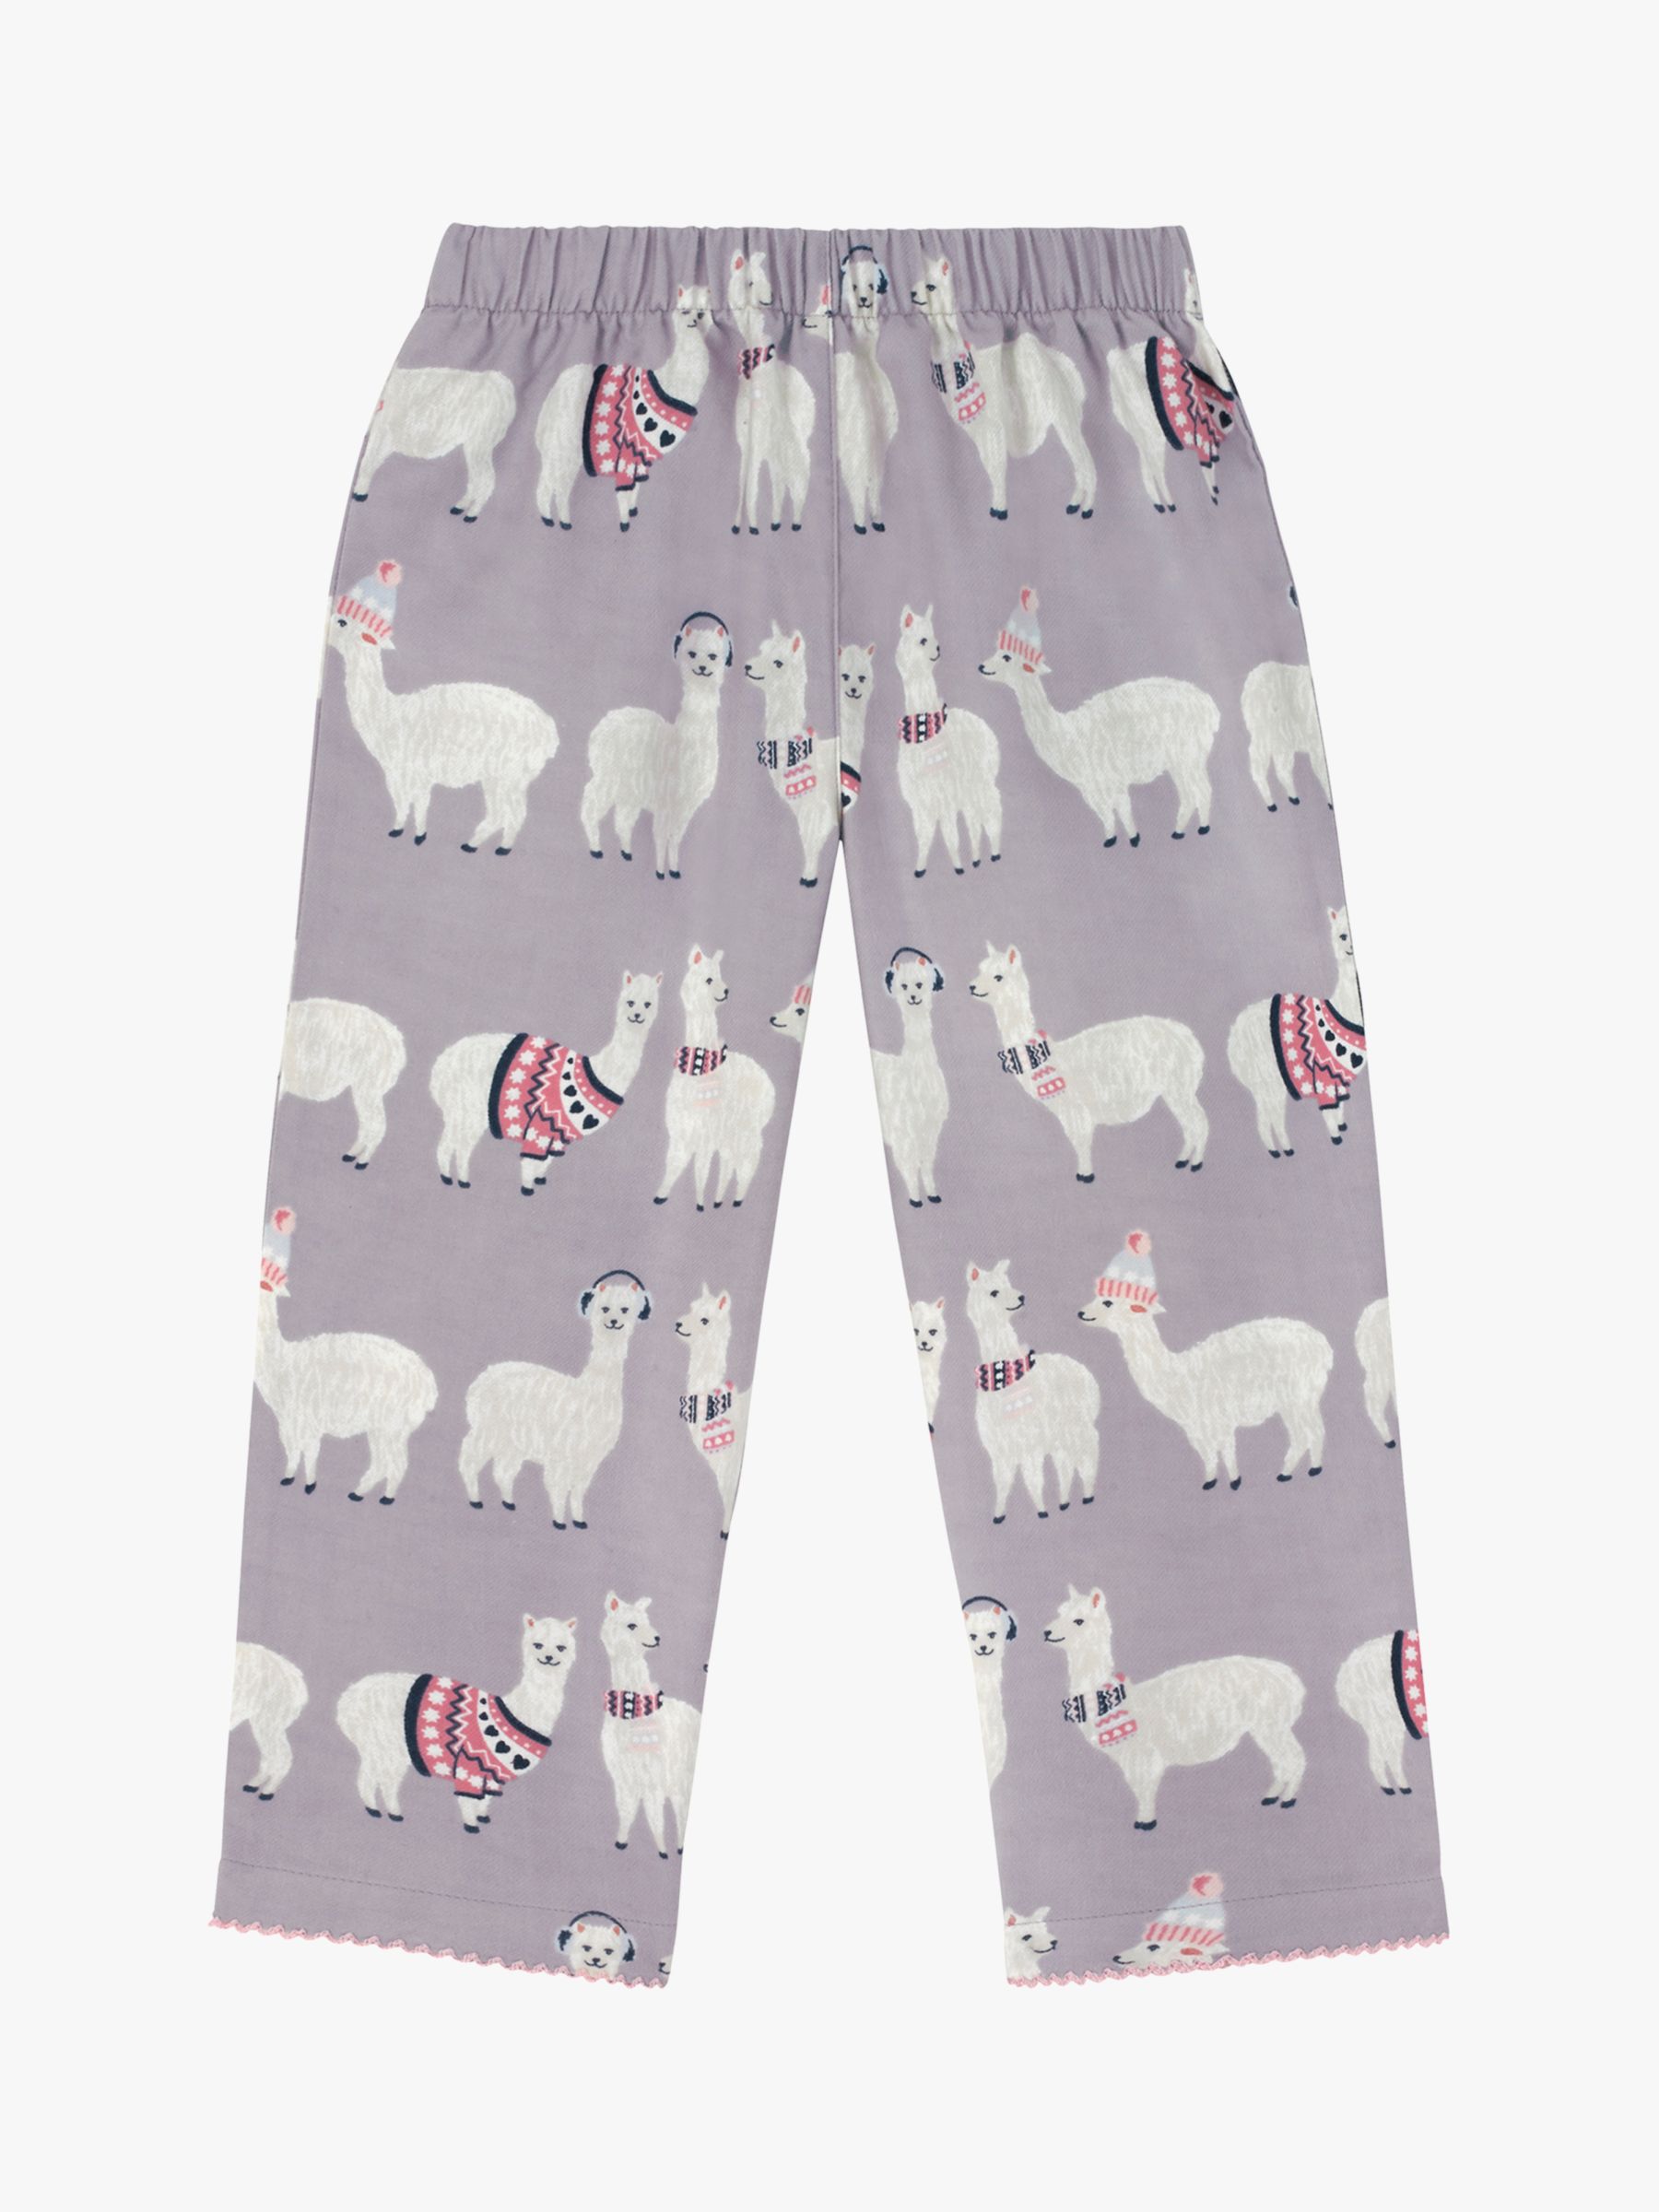 cath kidston alpaca pyjamas